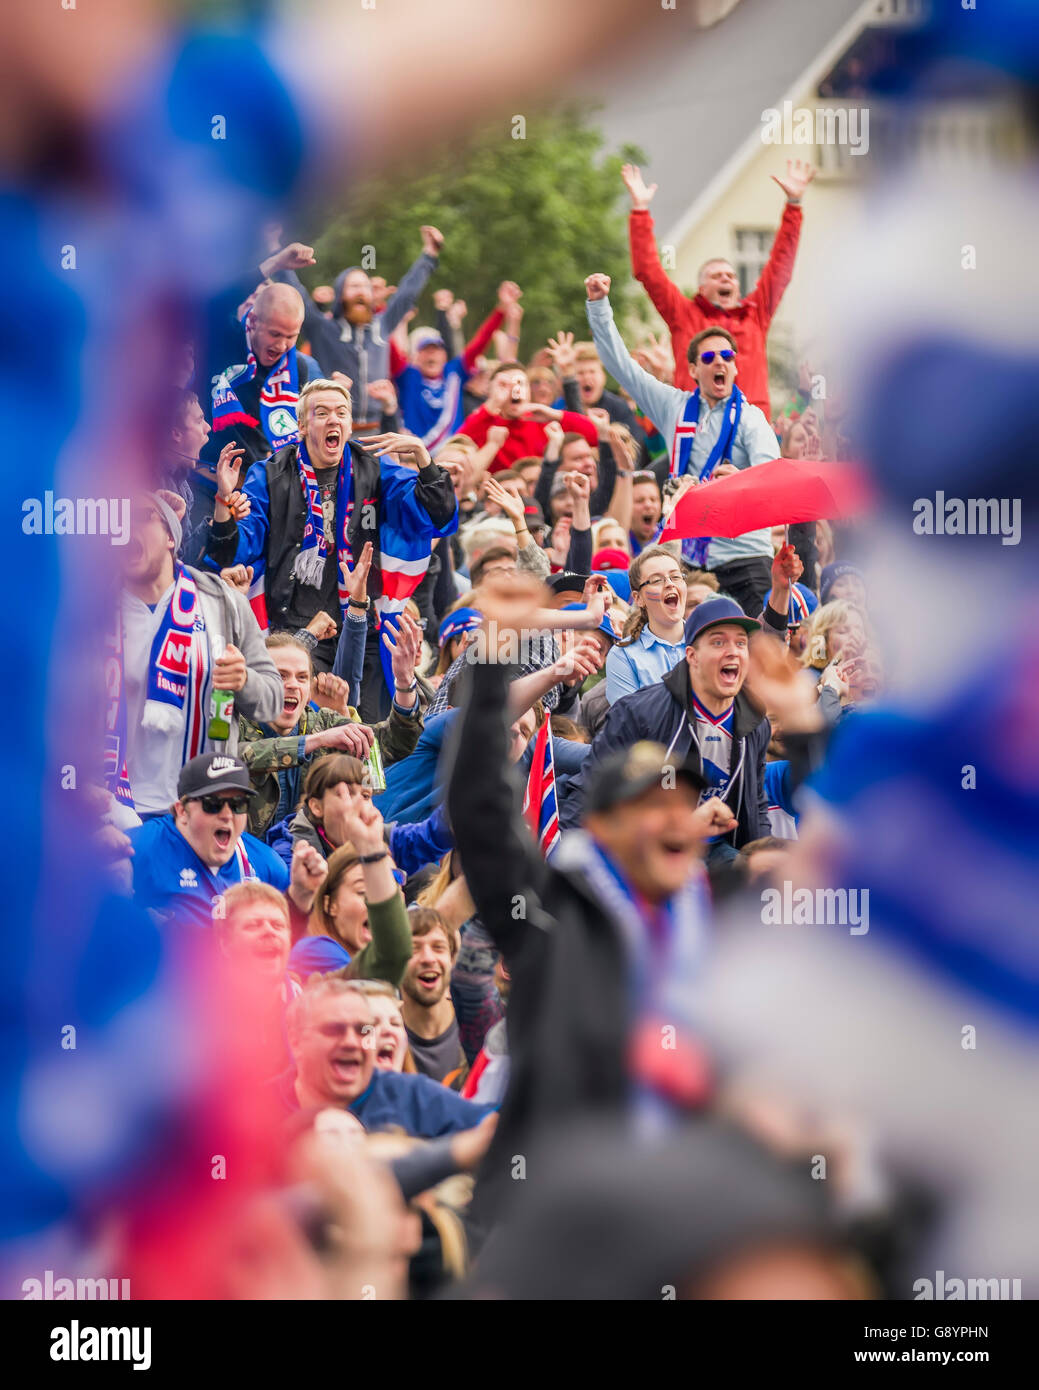 La folla nel centro di Reykjavik la visione di Islanda vs Inghilterra in UEFA EURO 2016 torneo di calcio, Reykjavik, Islanda. L'Islanda ha vinto 2-1. Giugno 27, 2016 Foto Stock